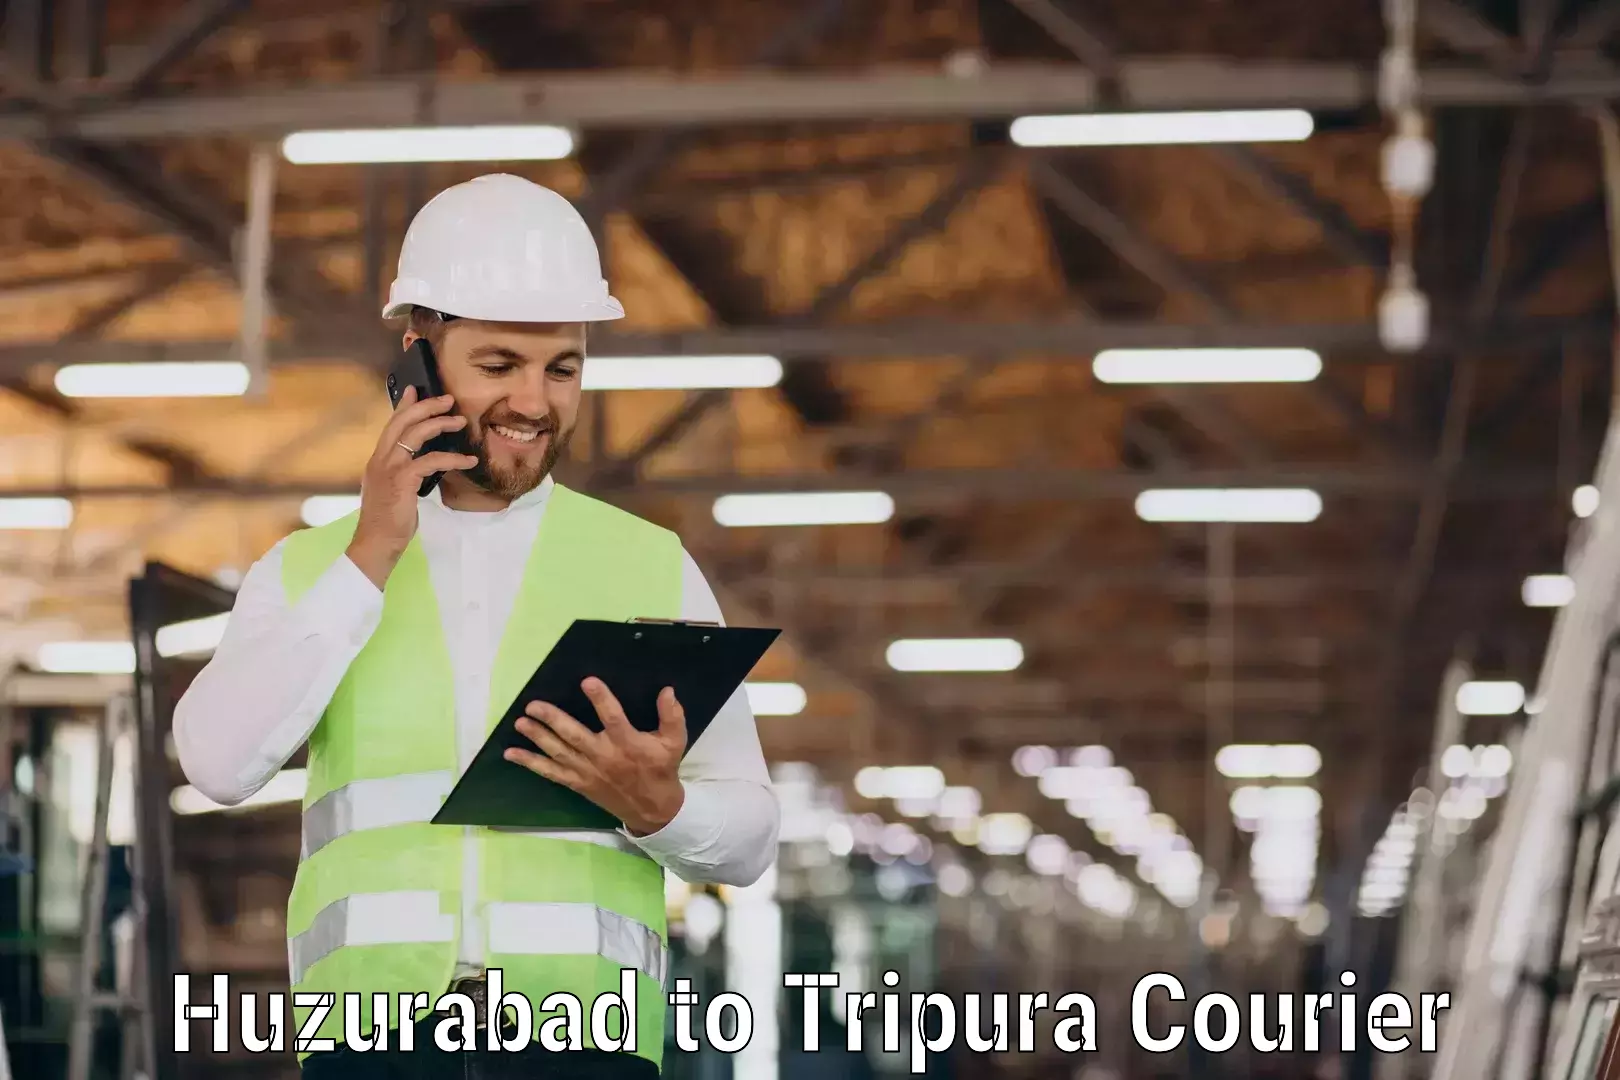 Courier service efficiency Huzurabad to Ambassa